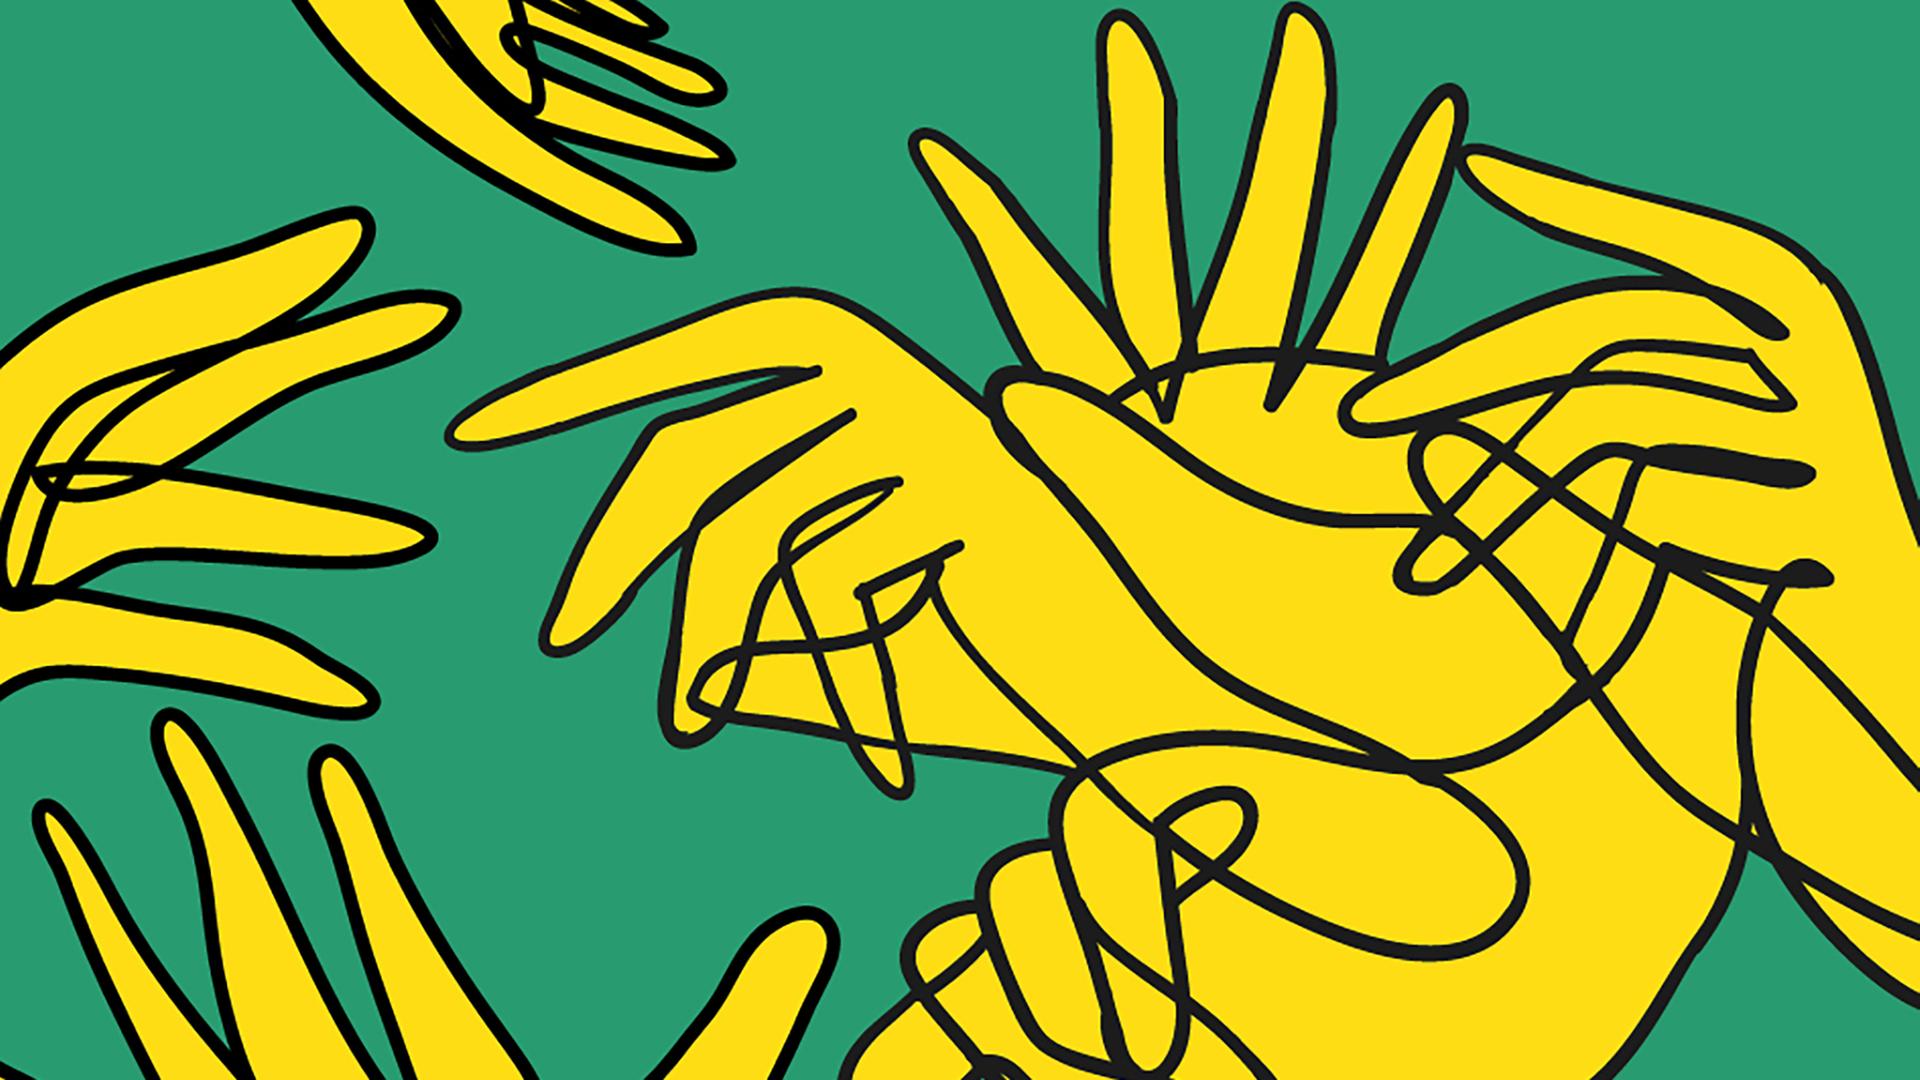 Keyvisual der documenta 15 - abstrakte Zeichnung von gelben Händen auf grünem Grund.